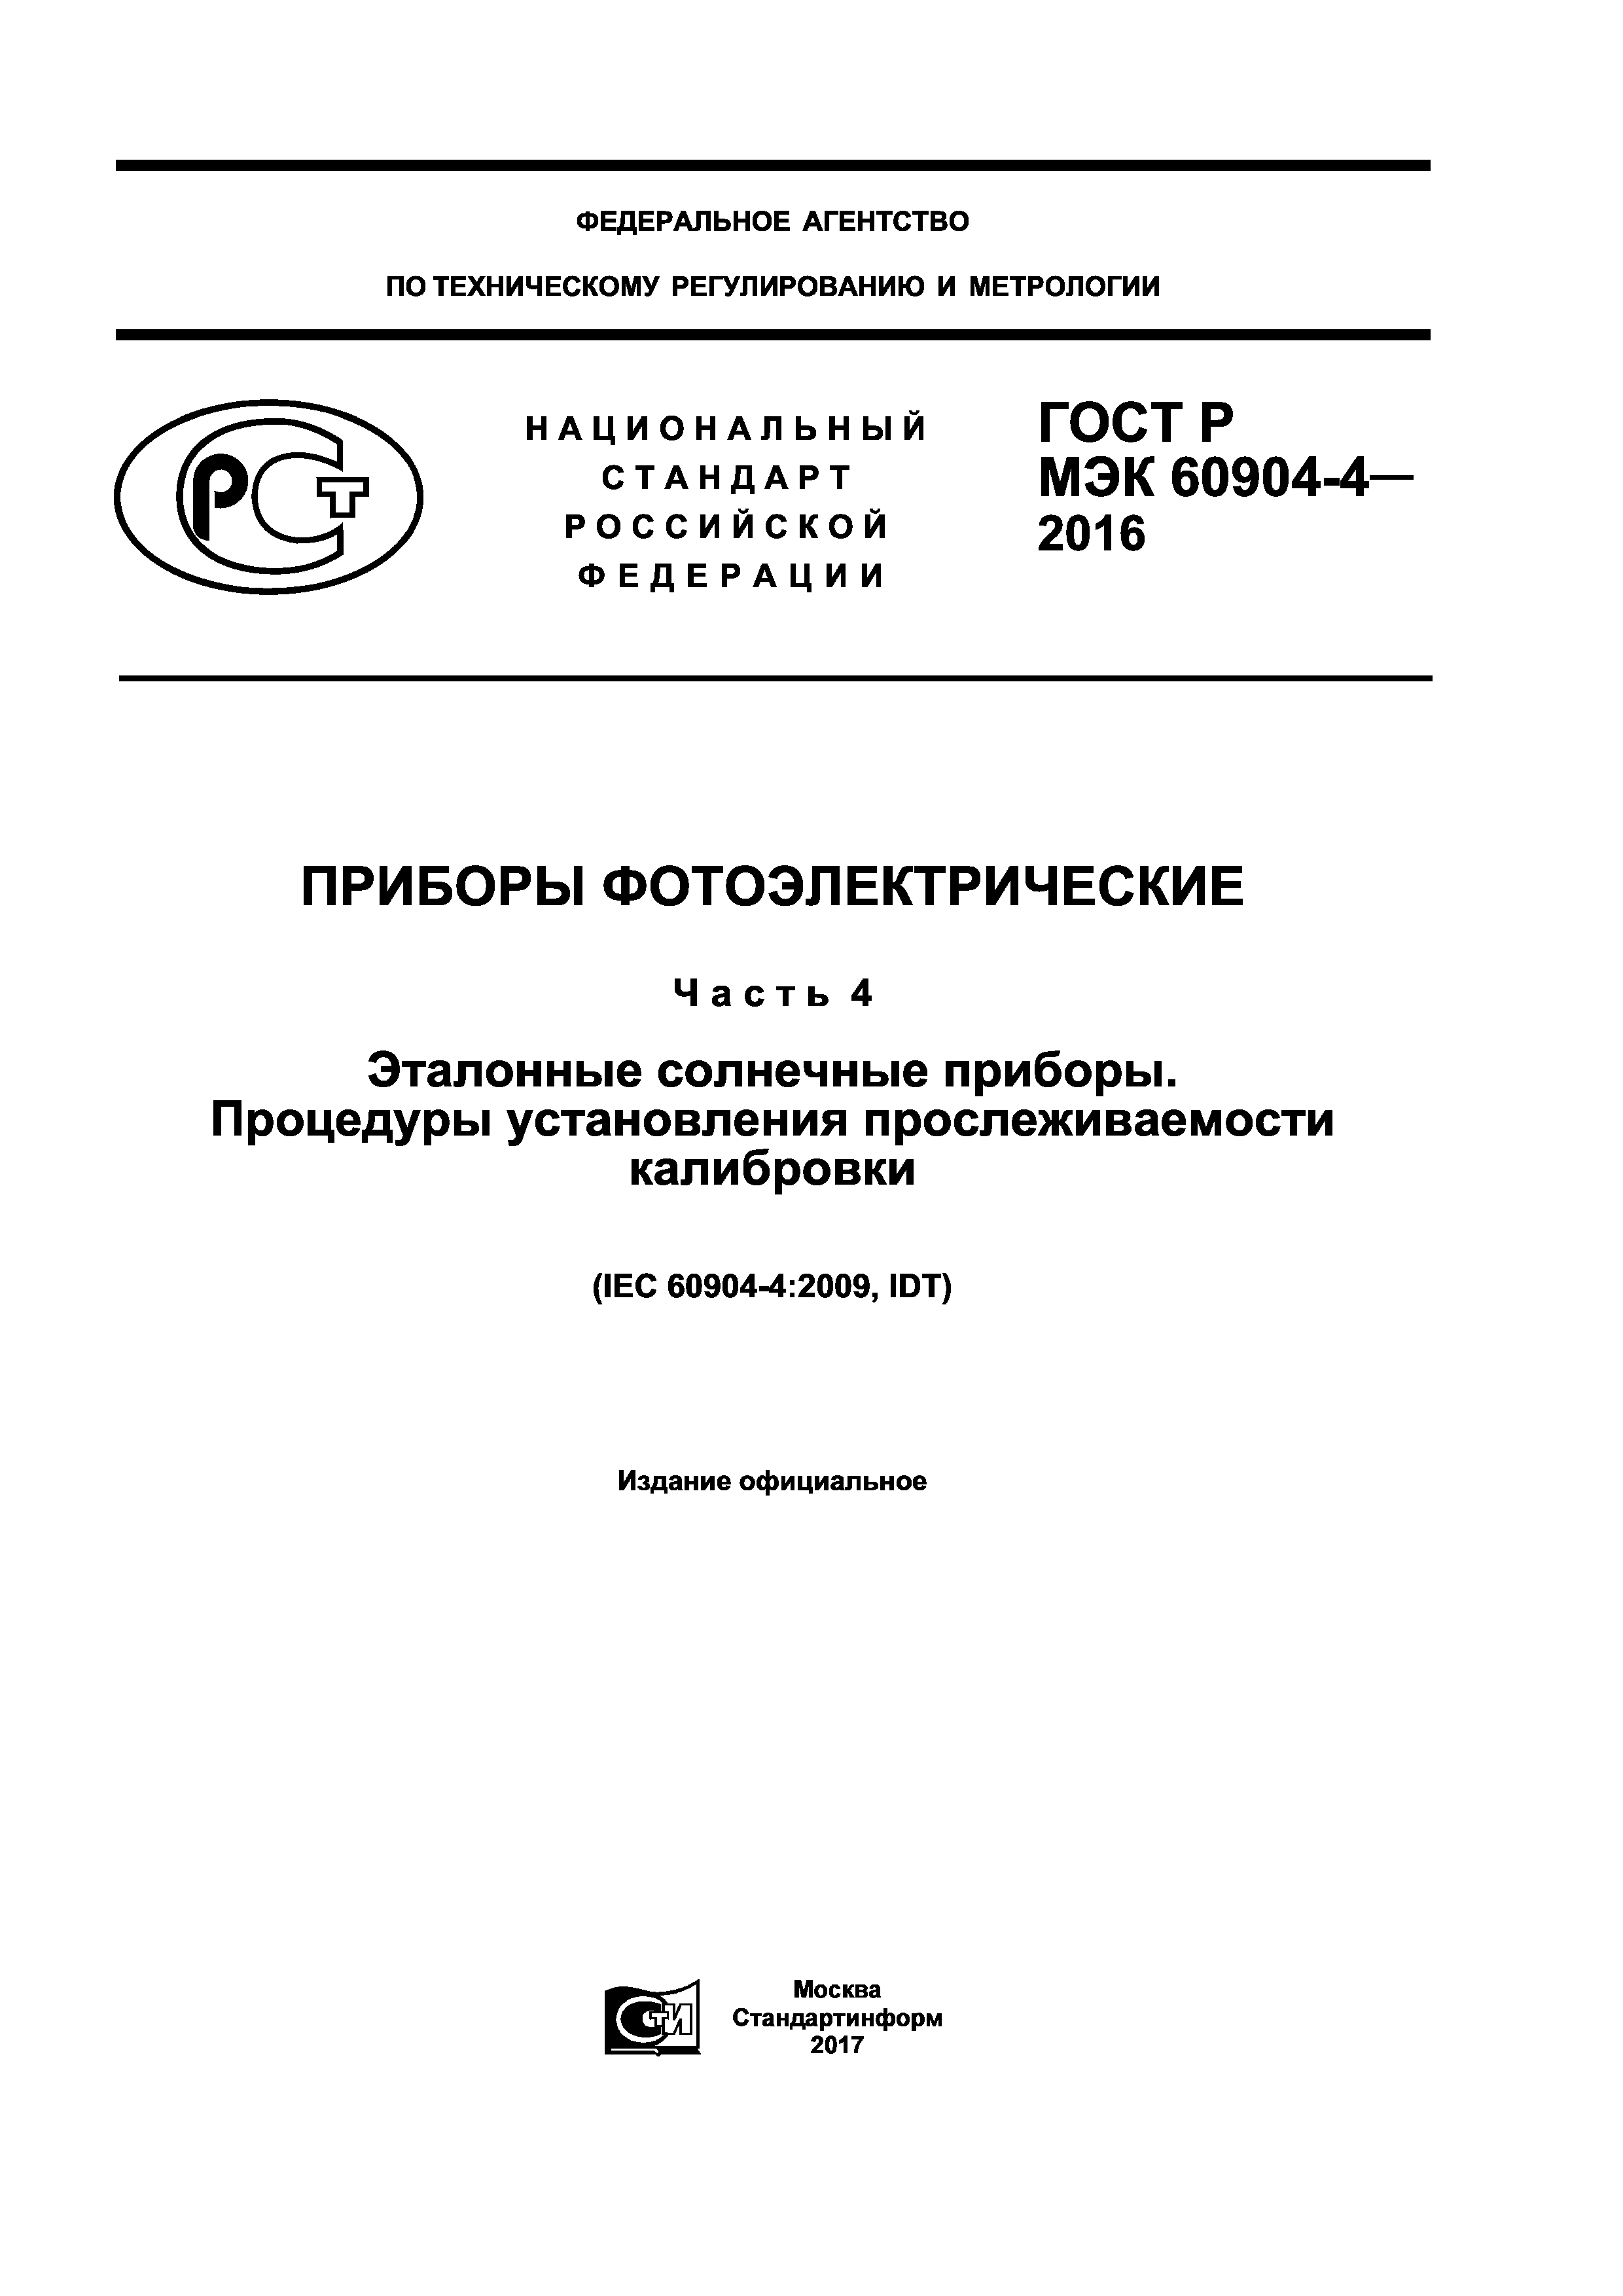 ГОСТ Р МЭК 60904-4-2016